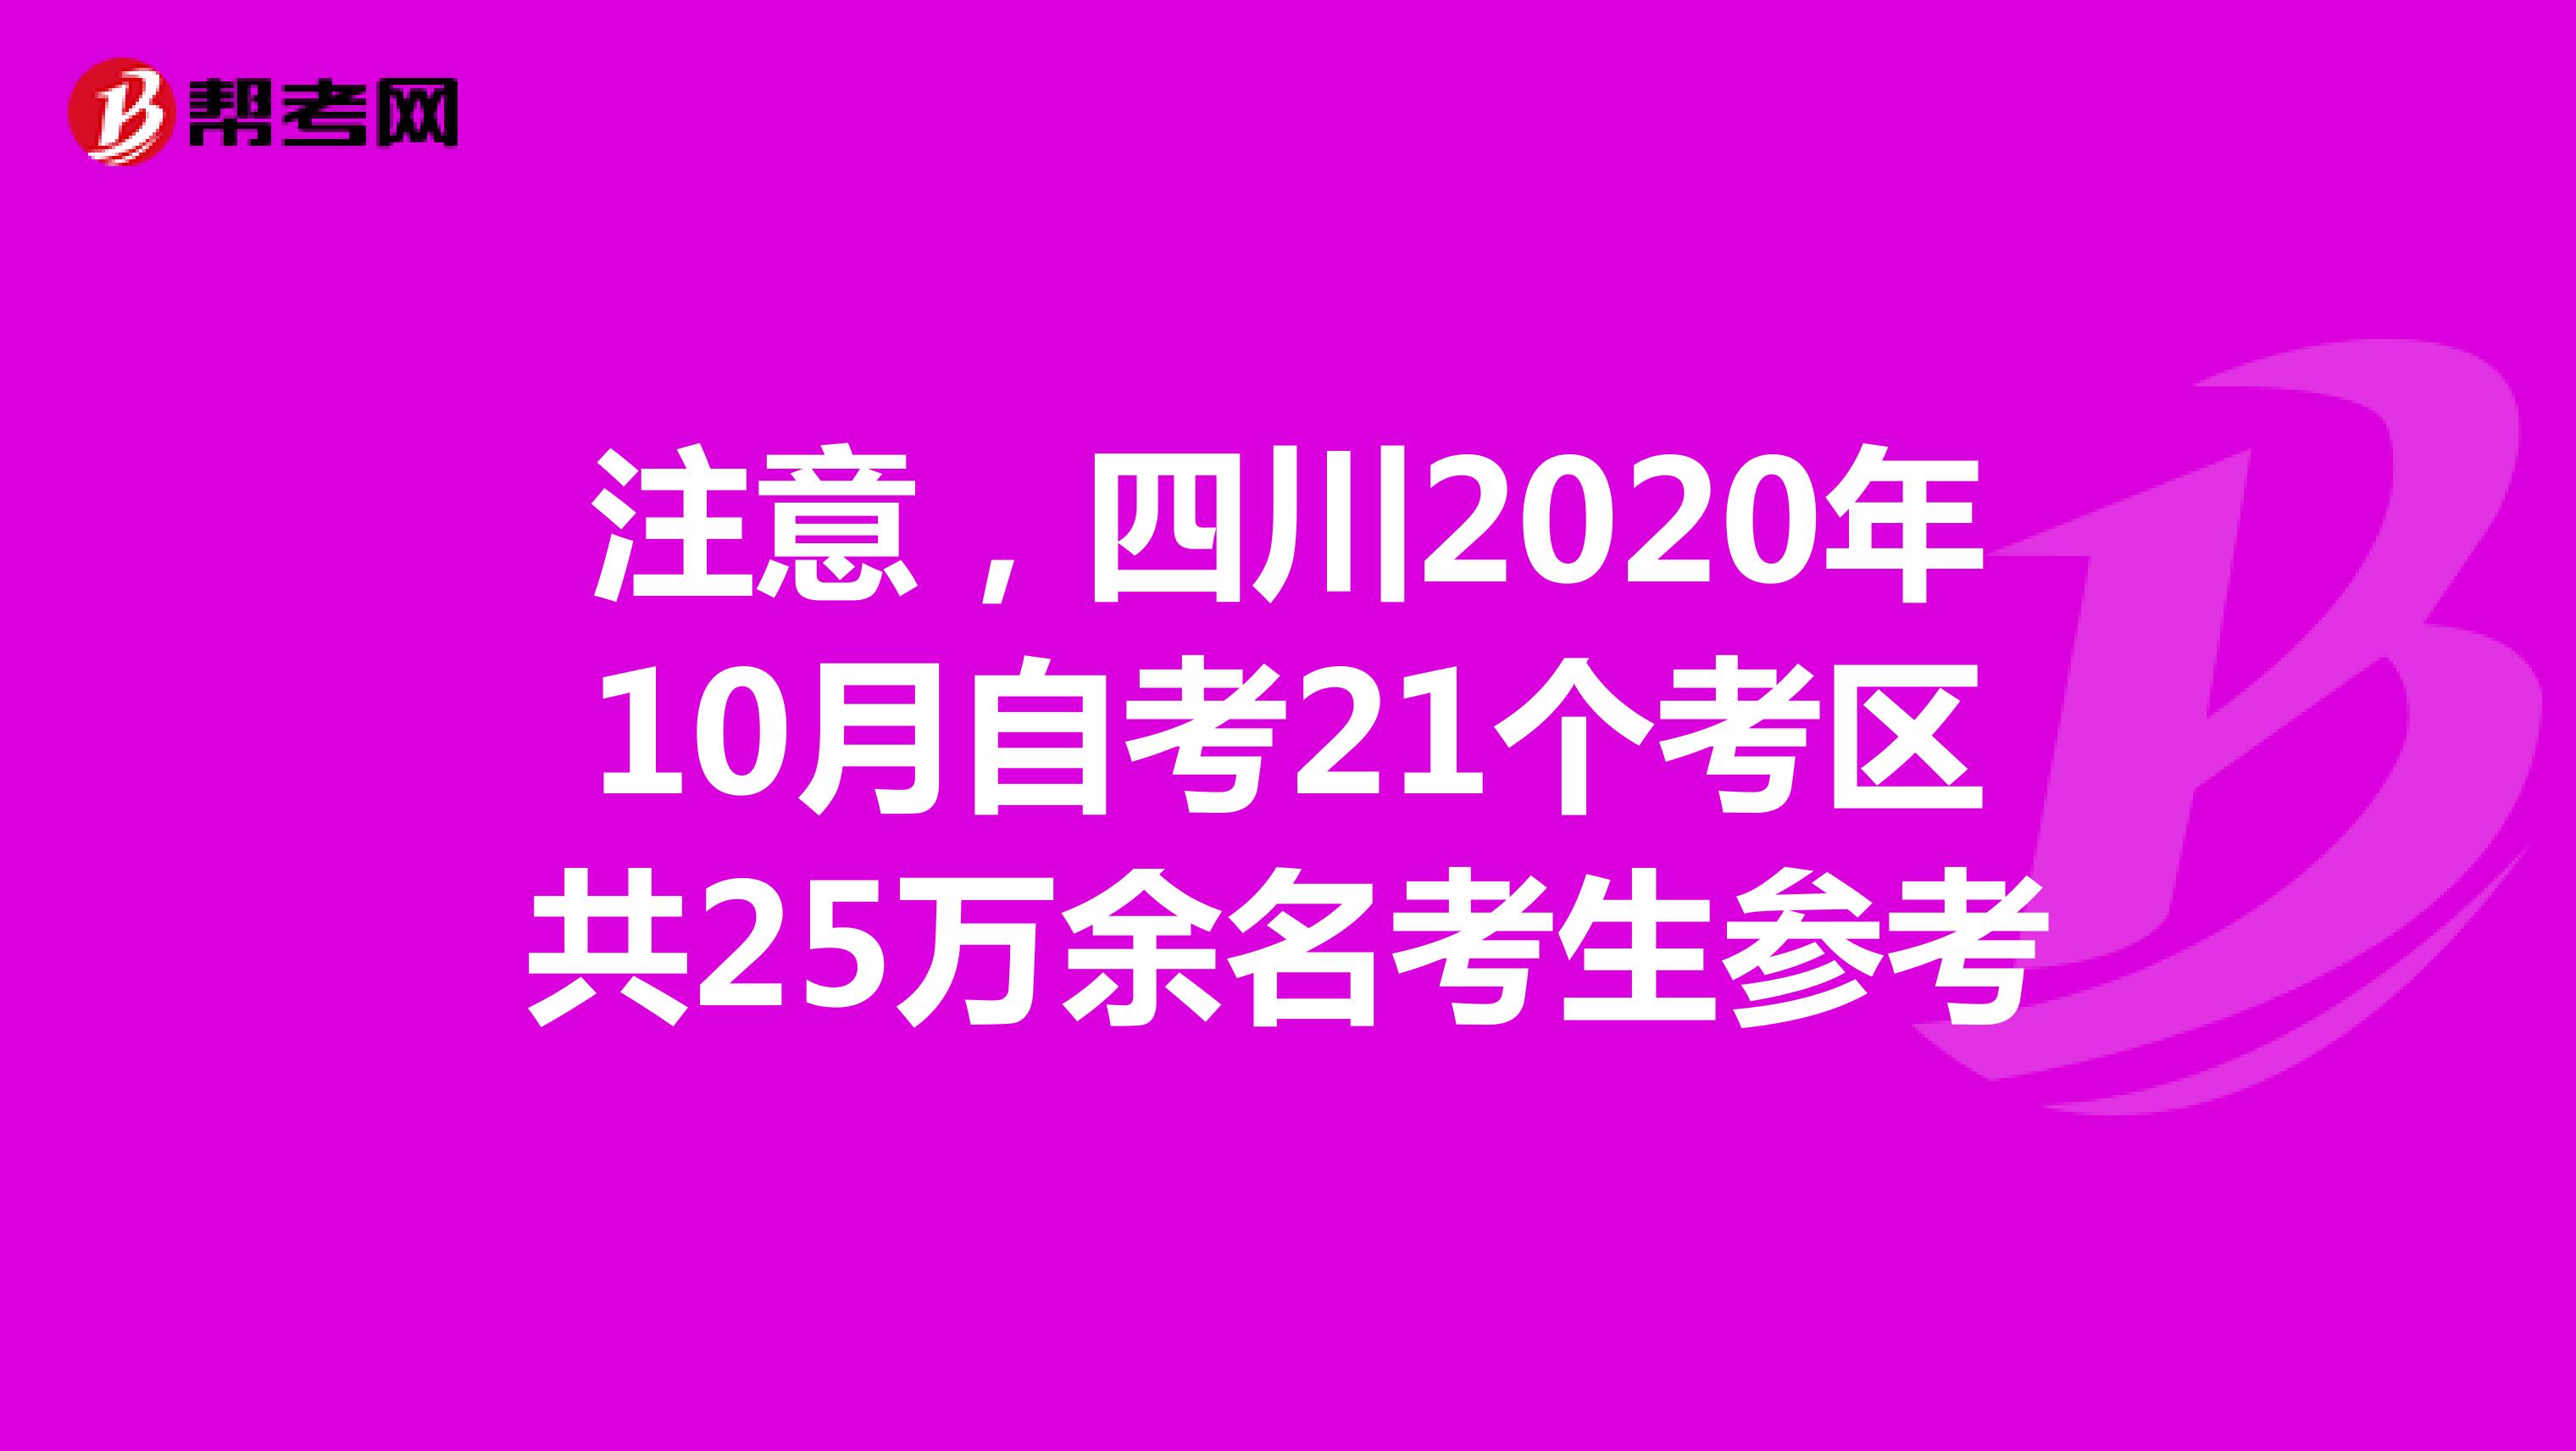 注意，四川2020年10月自考21个考区共25万余名考生参考